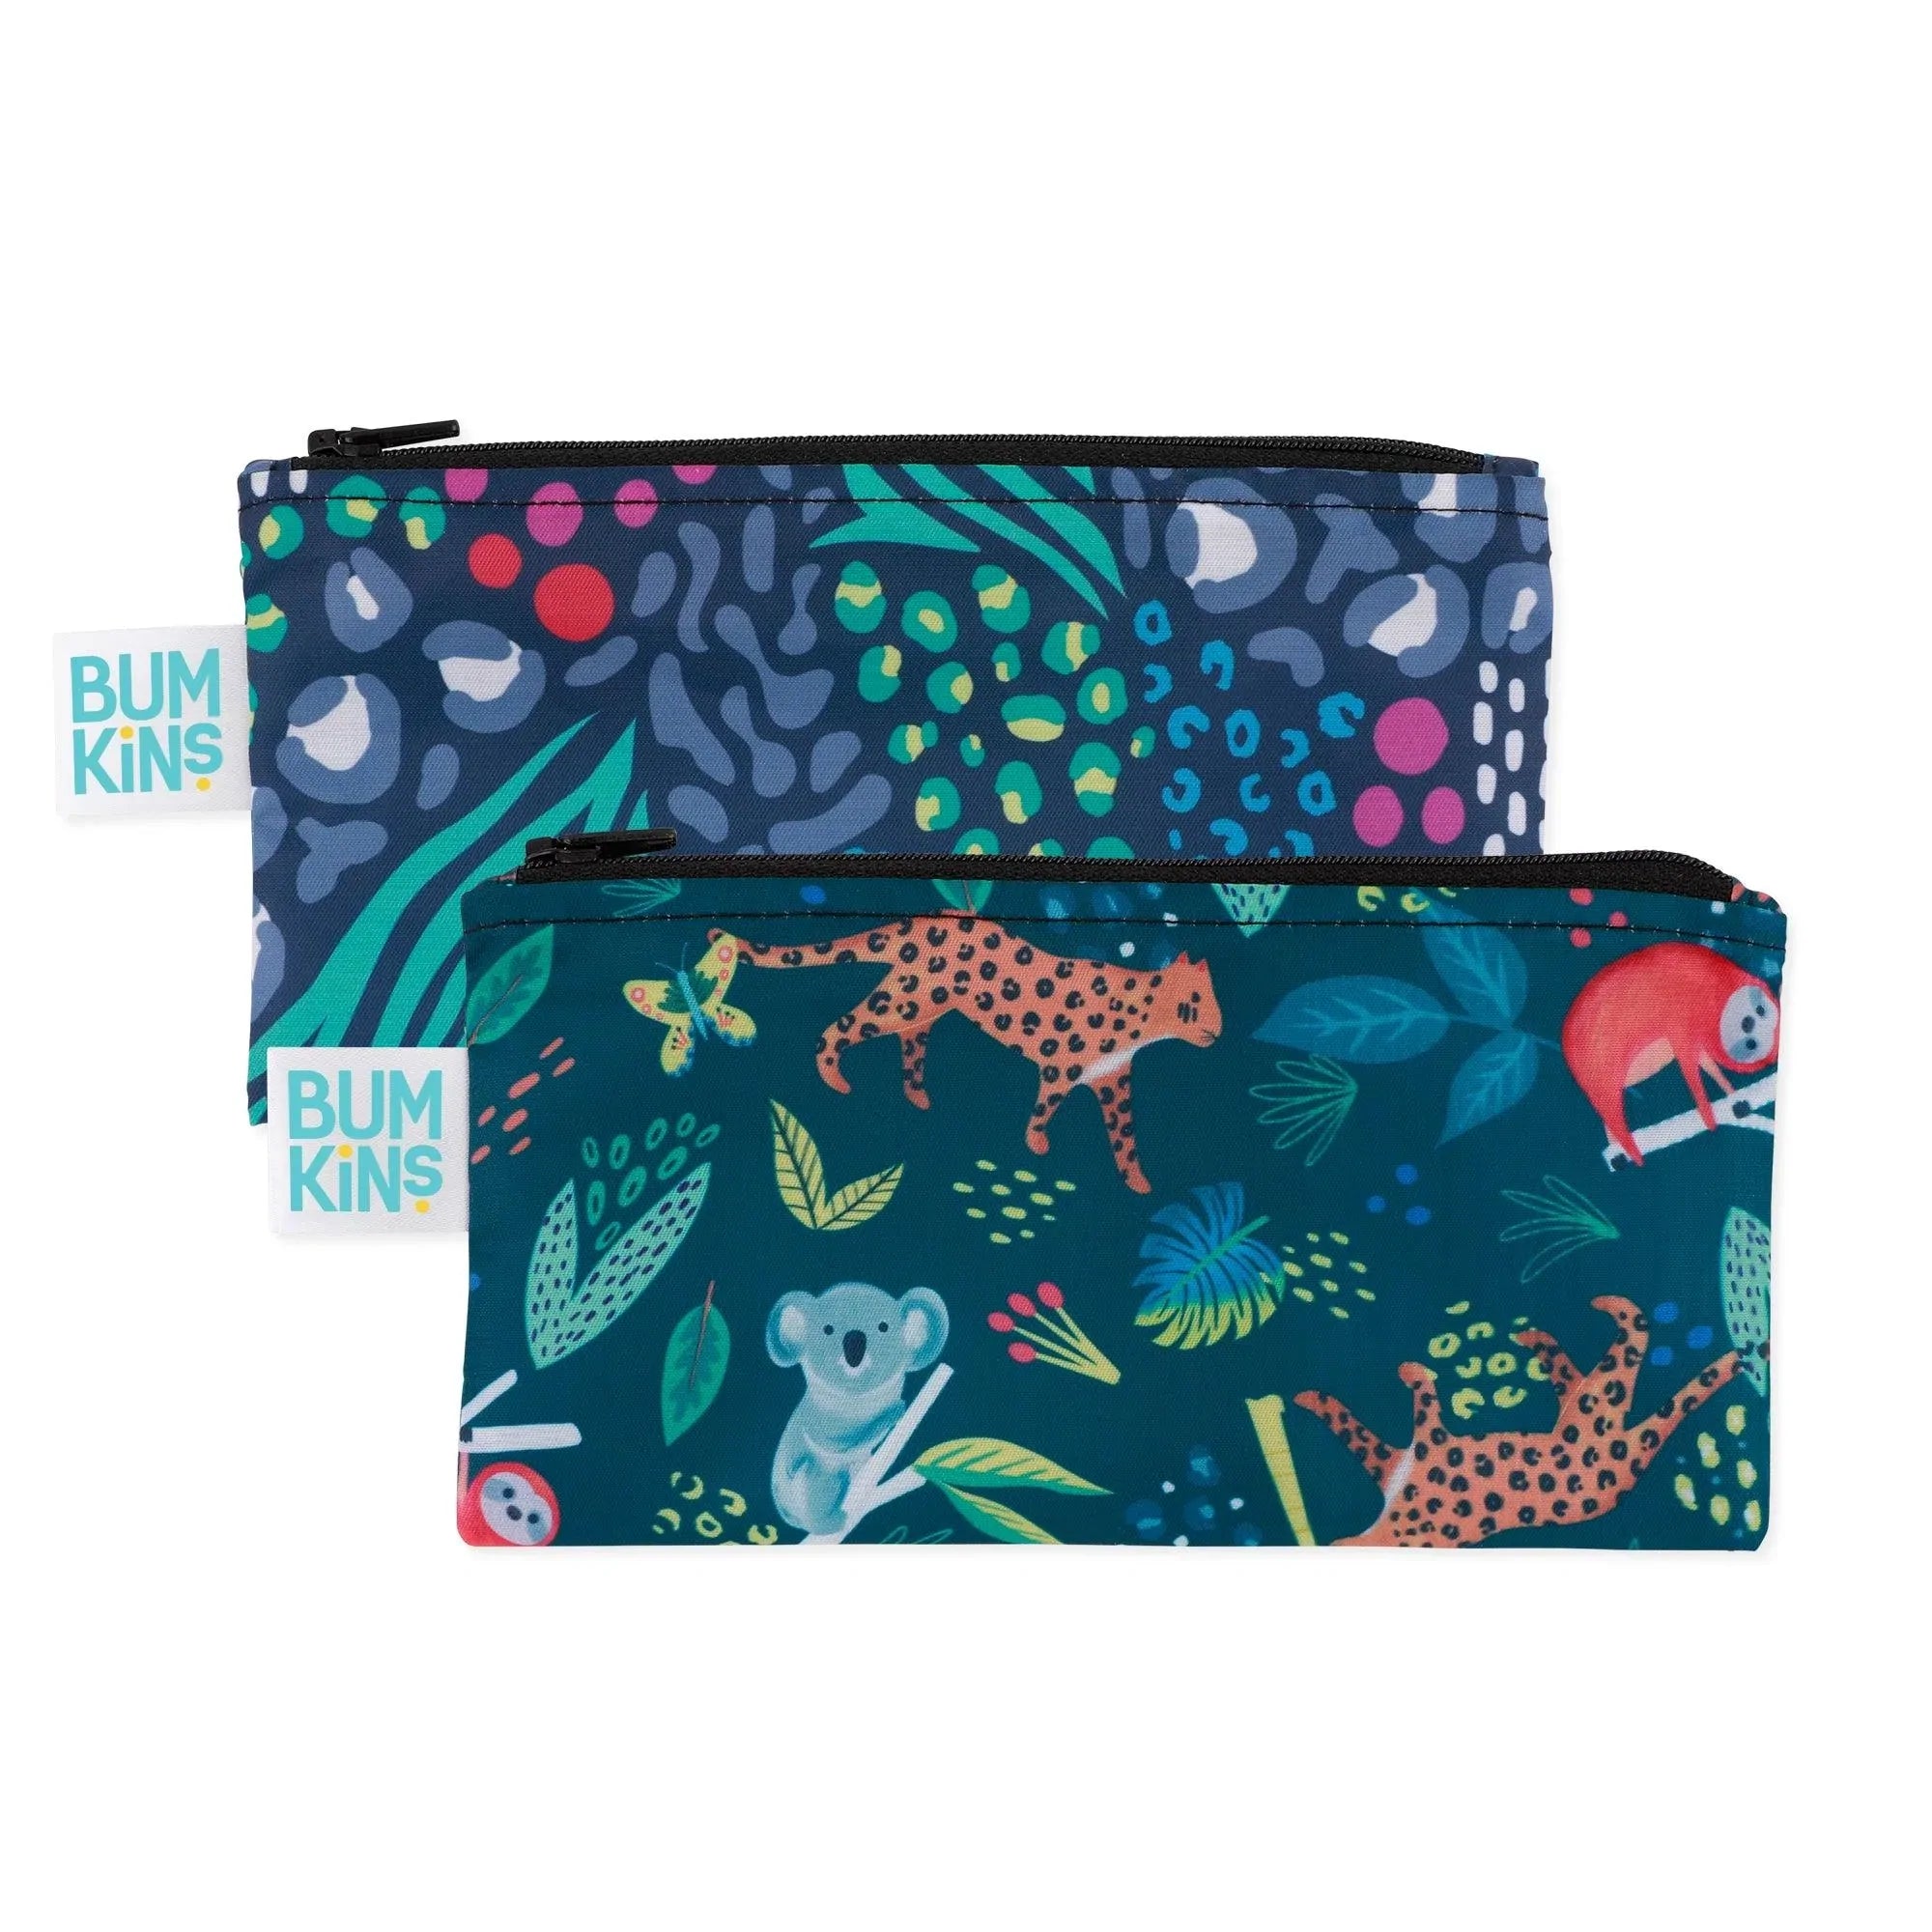 Bumkins Reusable Snack Bags Small Jungle & Animal Prints